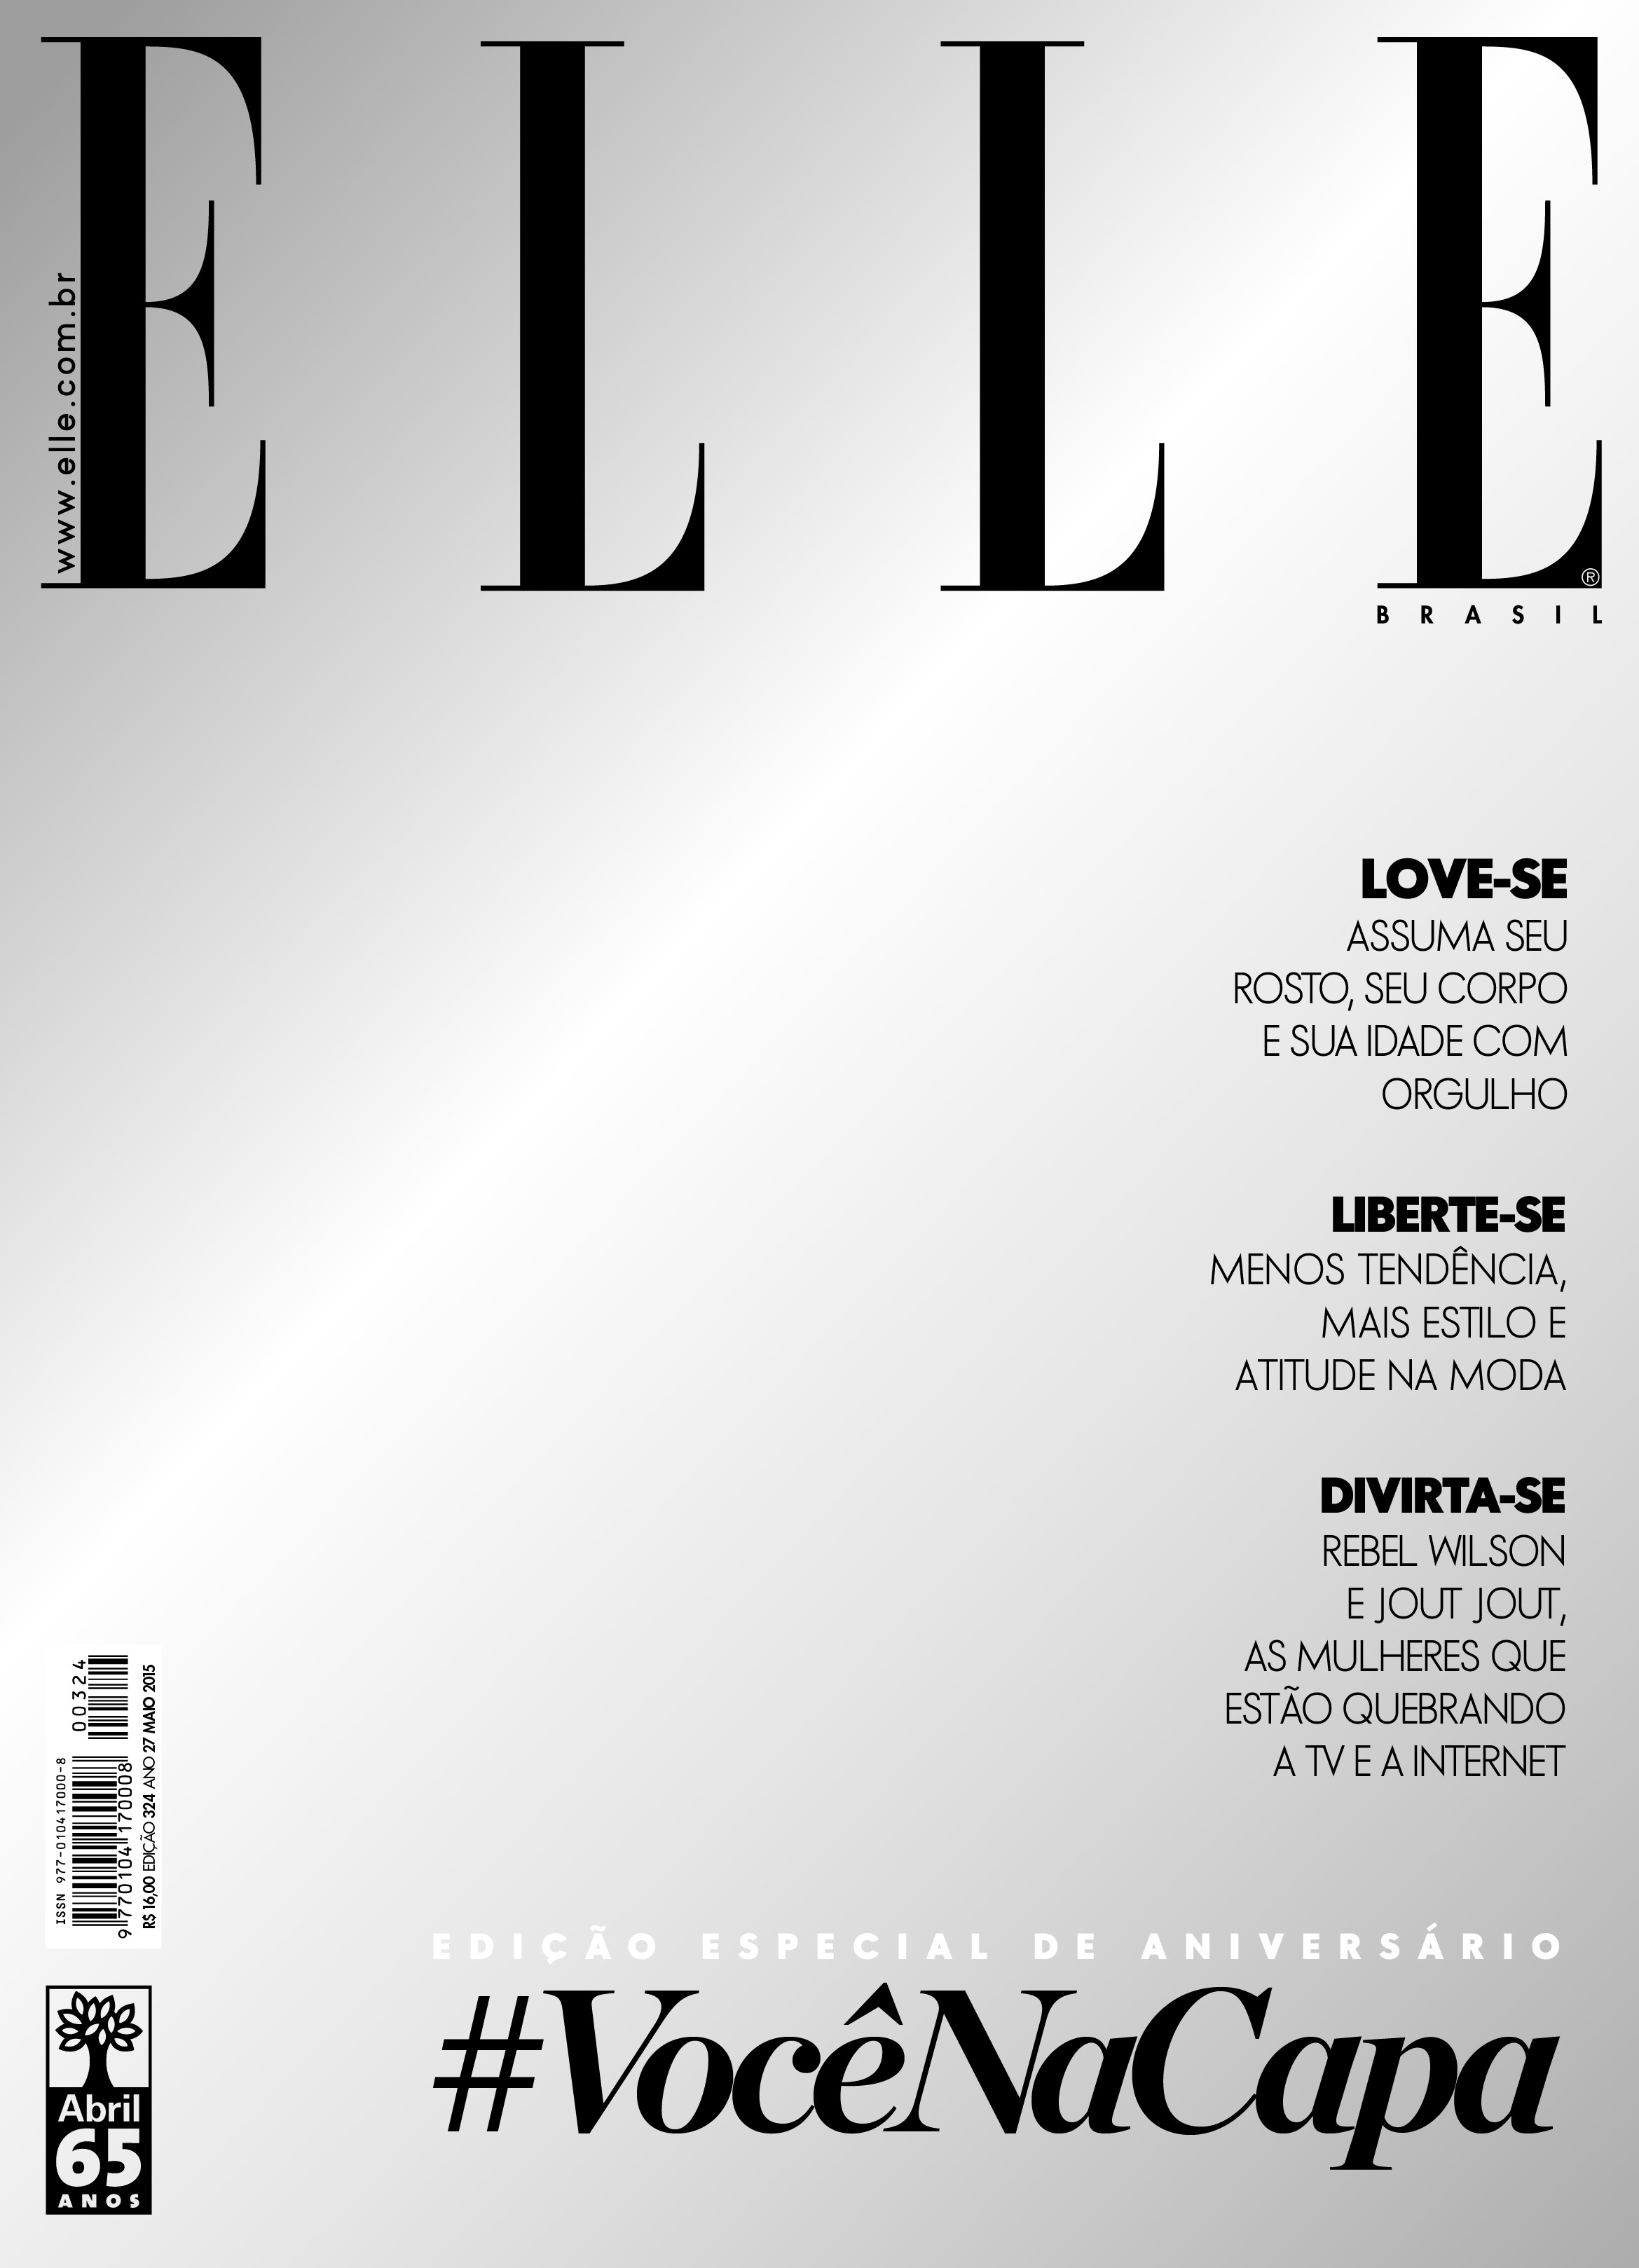 Edição de aniversário da "Elle" Brasil traz capa espelhada ©Divulgação